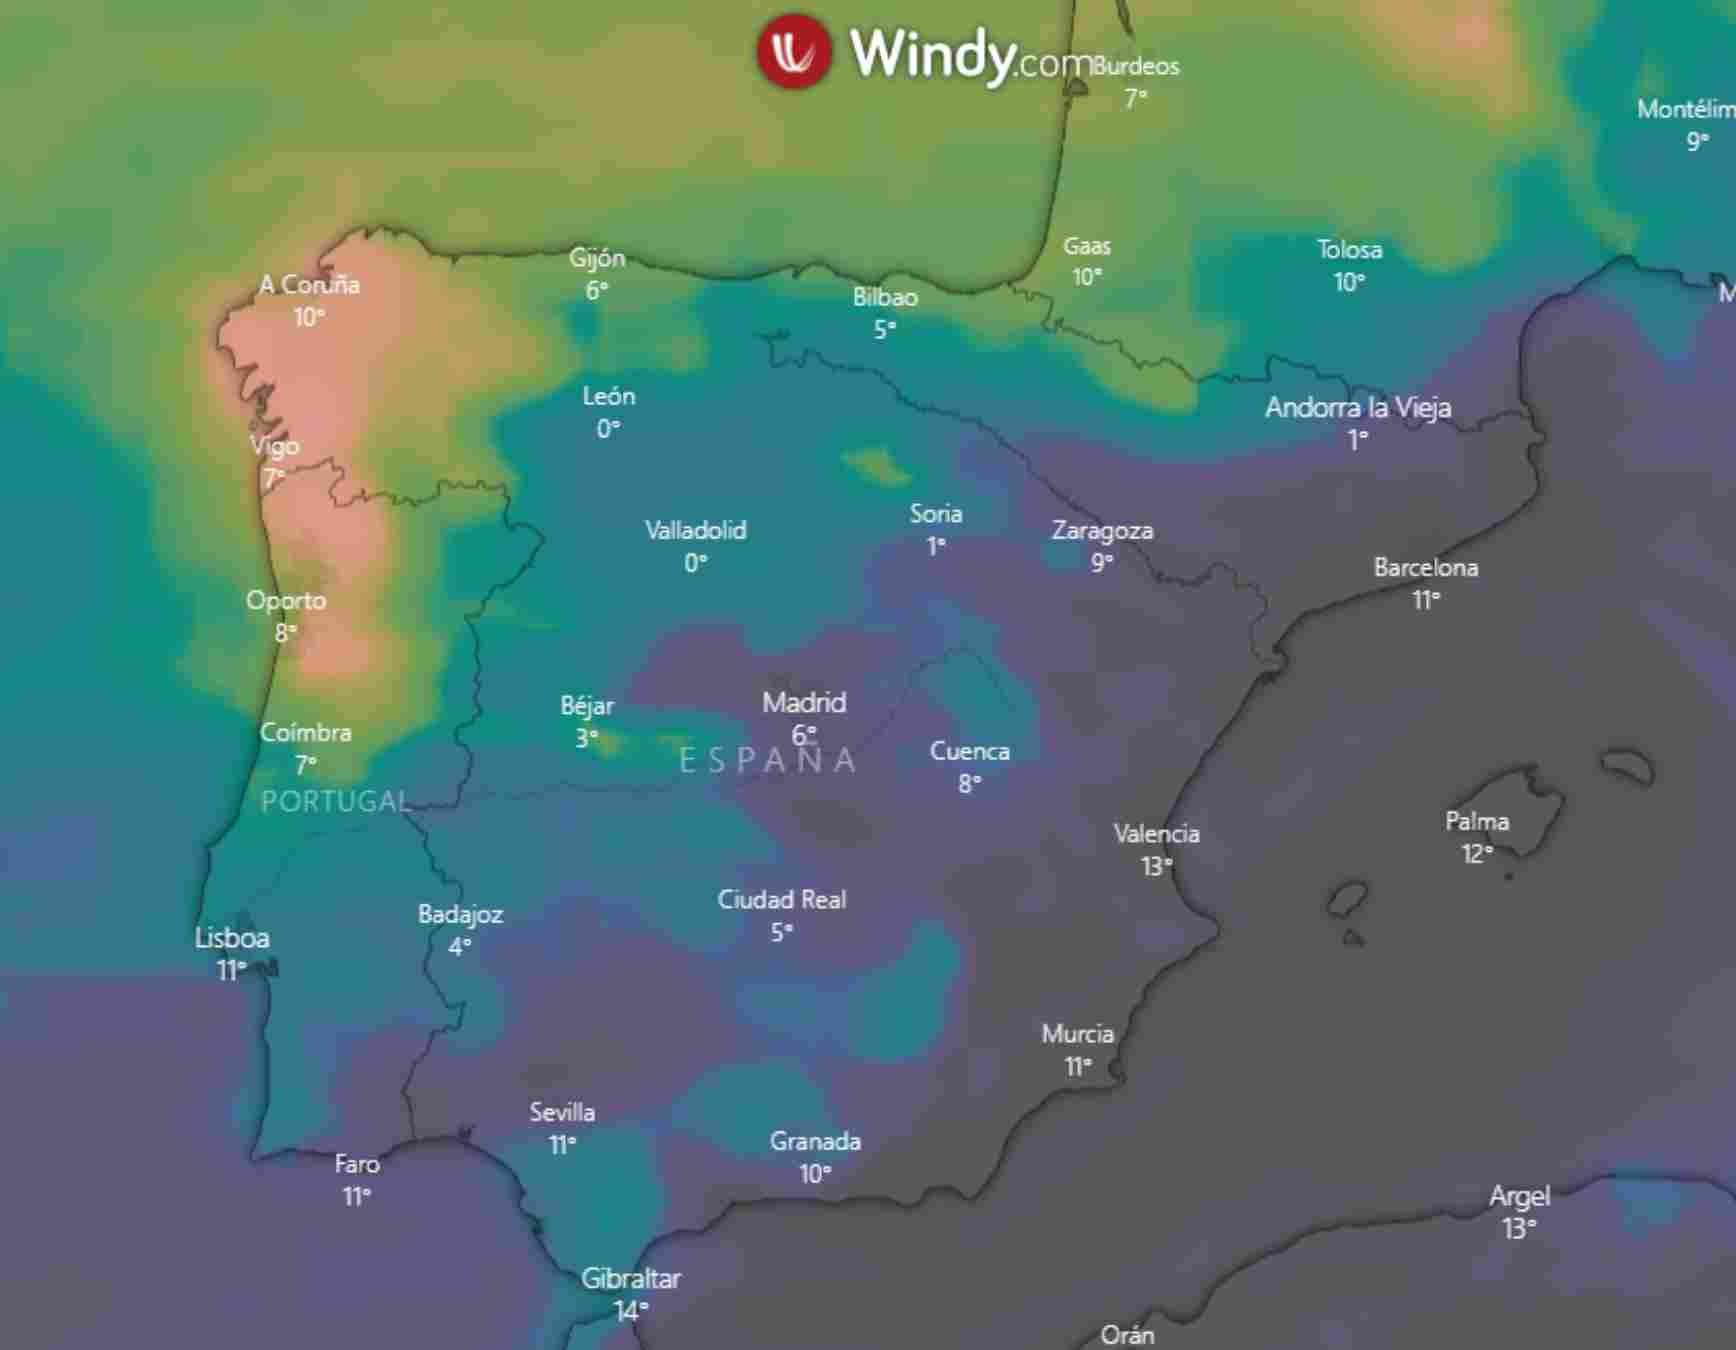 La pluja d'aquesta setmana només arribarà al Pirineu de Lleida / Acumulat de pluja en 10 dies WINDY ECMWF